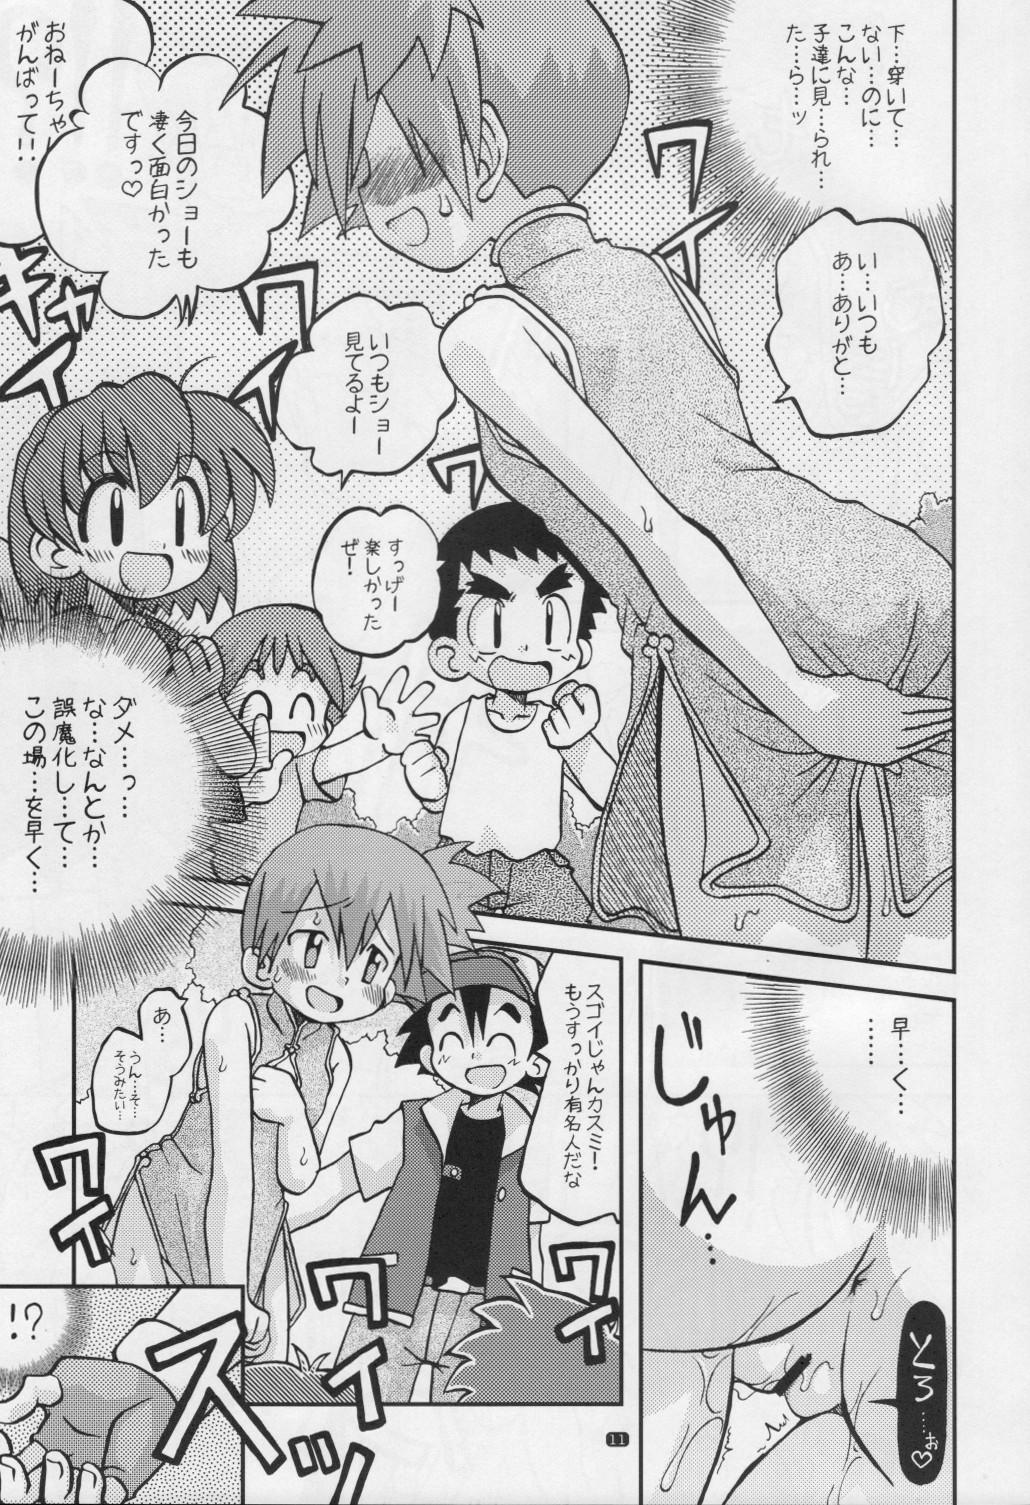 Hermana Yume no Tsubomi wa Tsubomi no Mama dakedo - Pokemon Roludo - Page 10